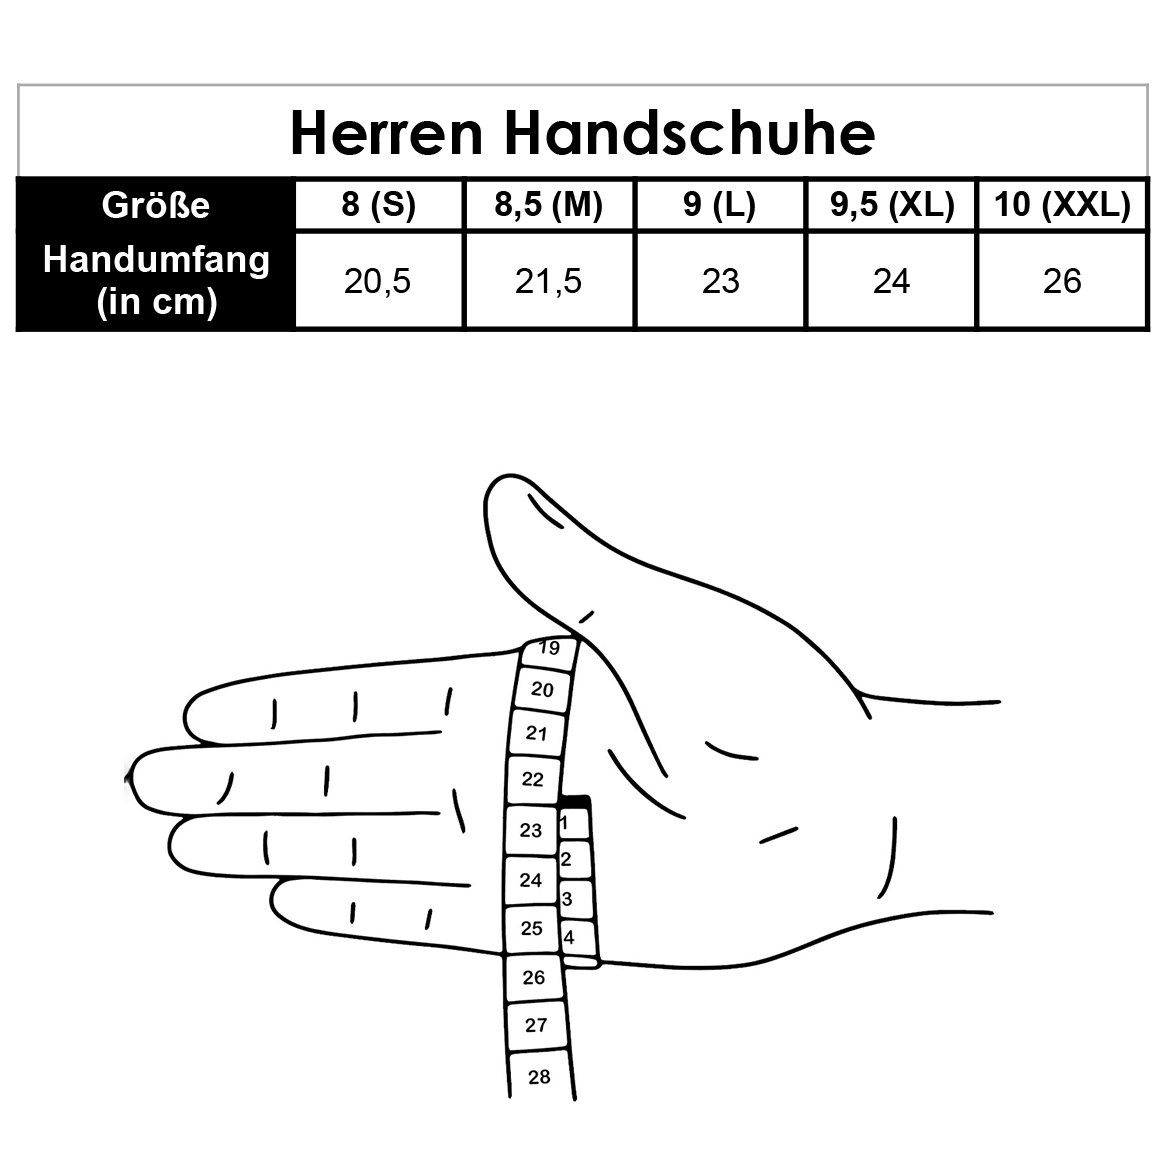 Lammfell-Handschuhe ADAM aus by spanischem Gewand - Merino-Lammfell Lederhandschuhe Schwarz Hand Weikert